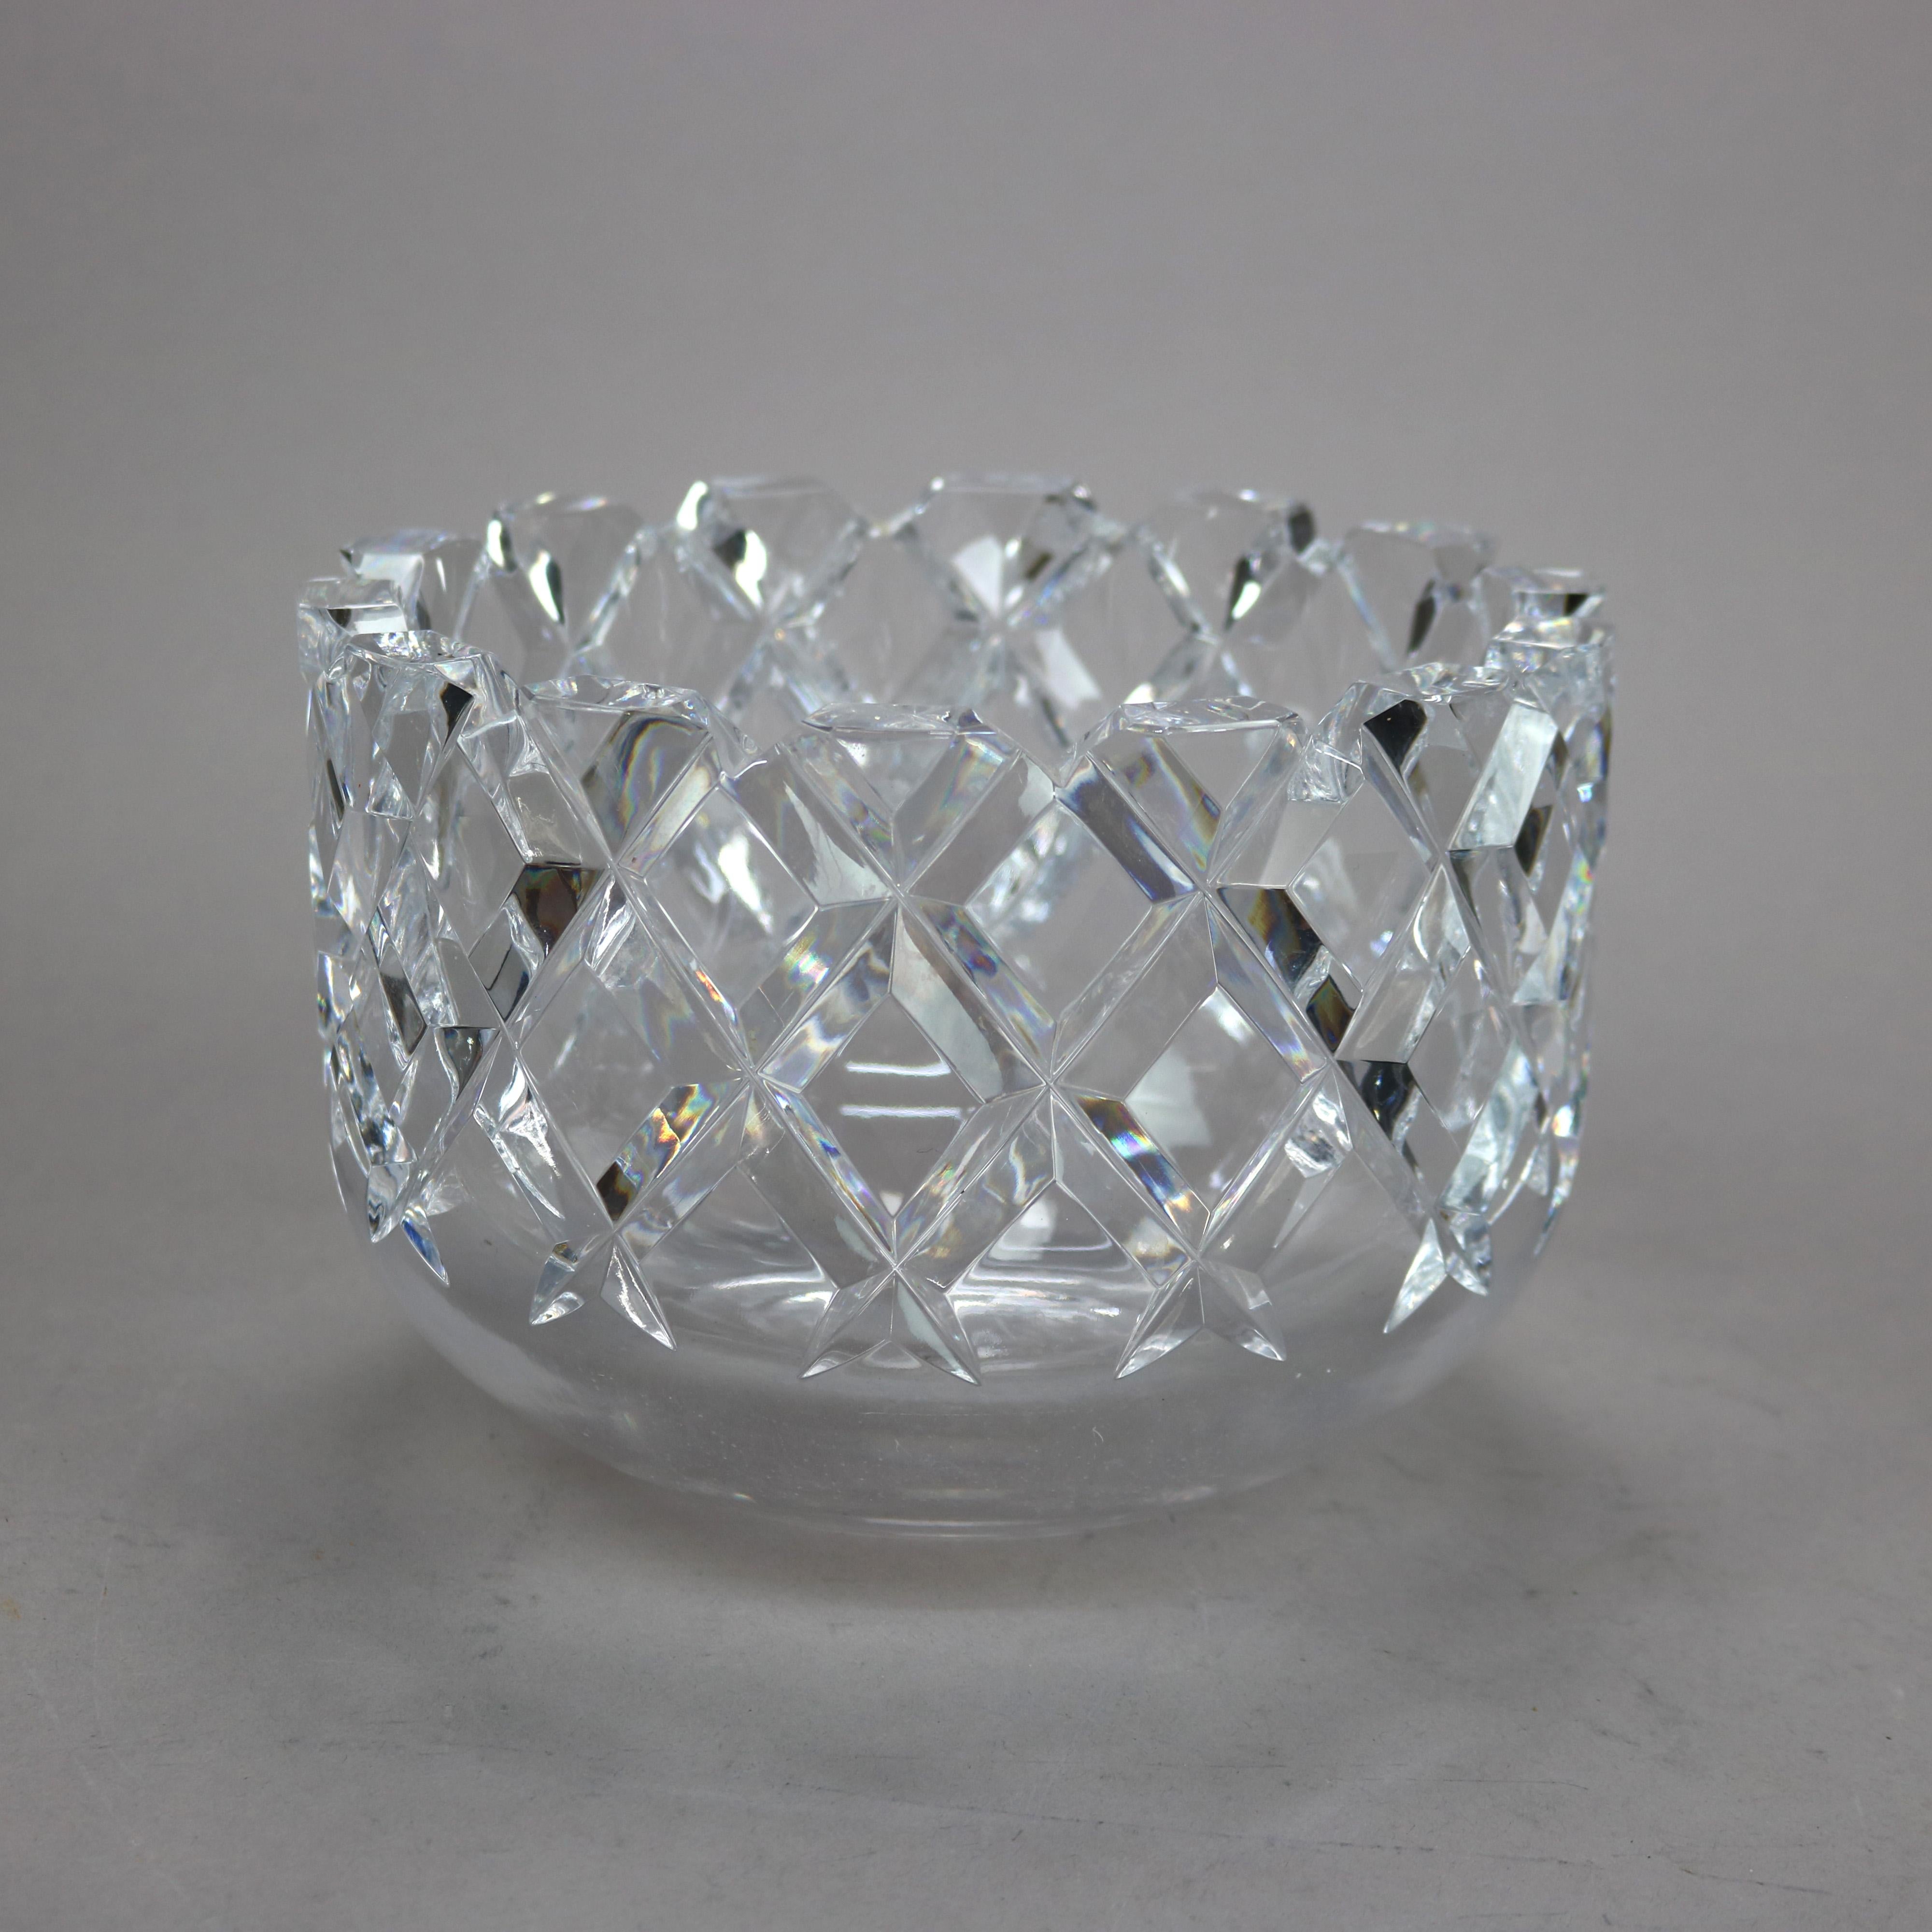 Une coupe à fruits en cristal par Orrefors dans le modèle Sofiero offre un motif de diamant quadrillé avec l'étiquette originale et la signature comme photographié, 20ème siècle.

Mesures - 5,5'' H X 8'' W X 8'' D.

Note sur le catalogue : Demandez